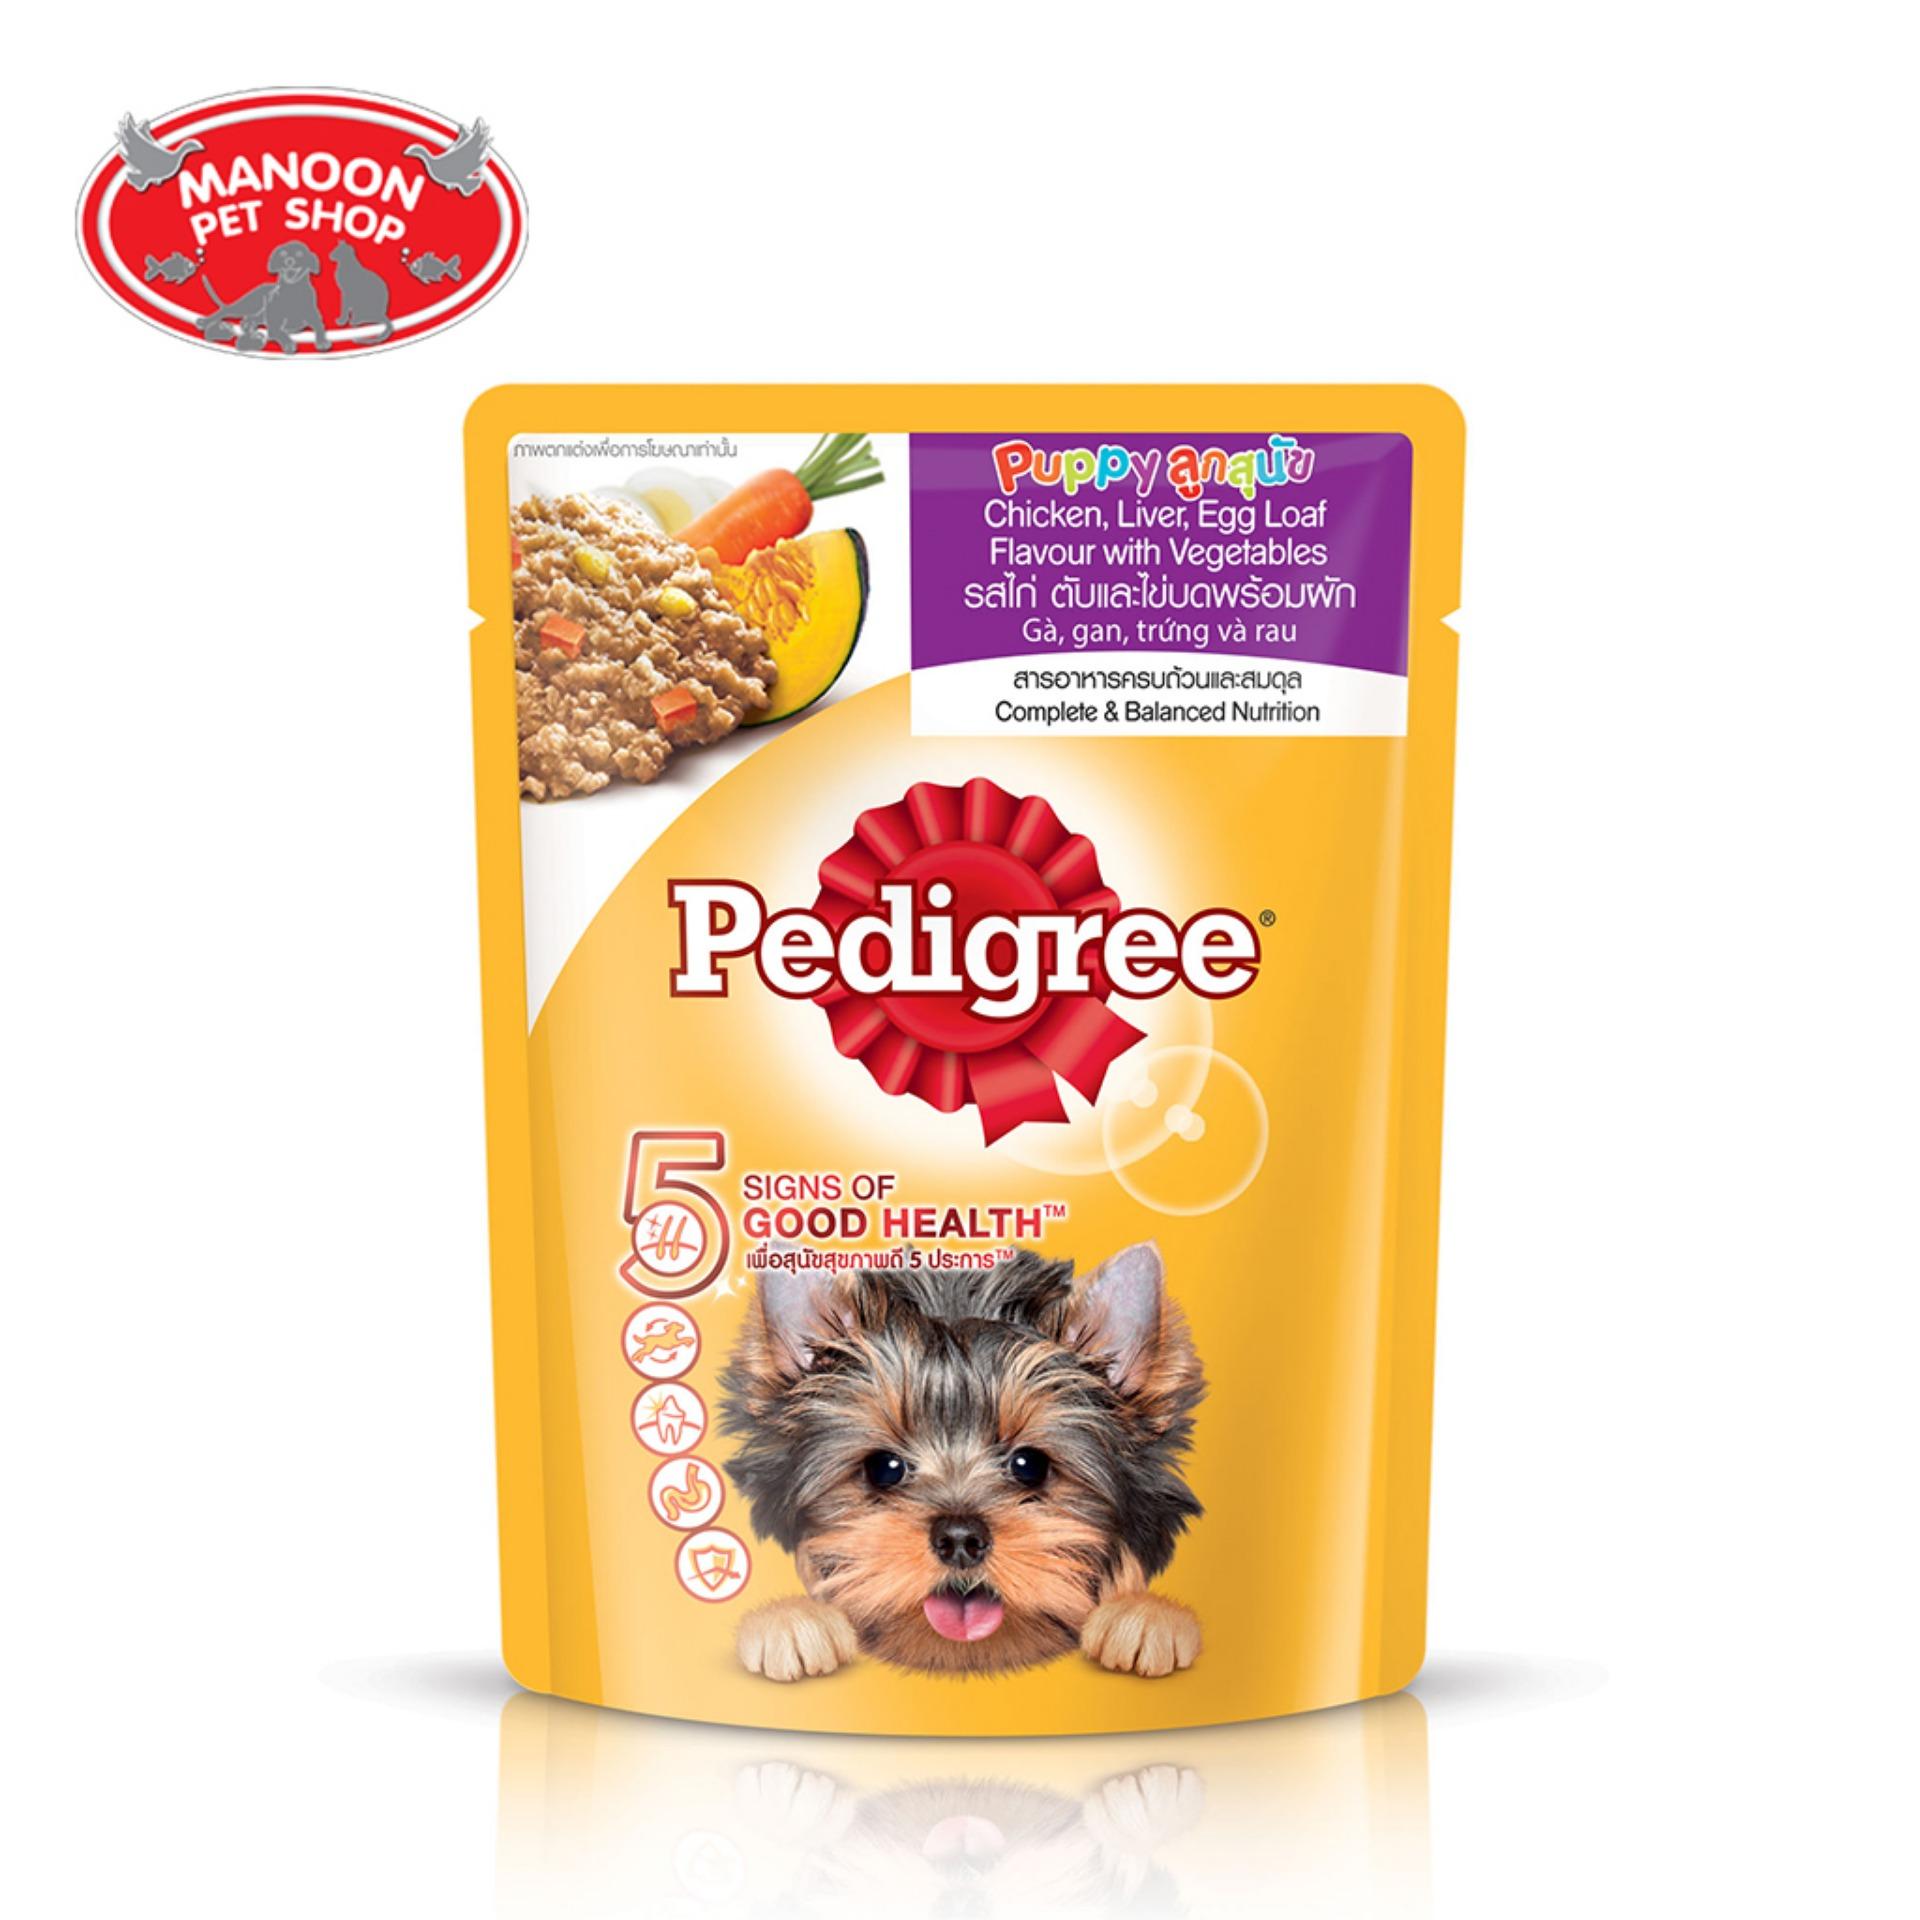 [12 ซอง][MANOON] Pedigree Pouch Puppy เพดดิกรีเพาซ์ลูกสุนัข รสไก่ ตับและไข่บดพร้อมผัก 80GX12ซอง